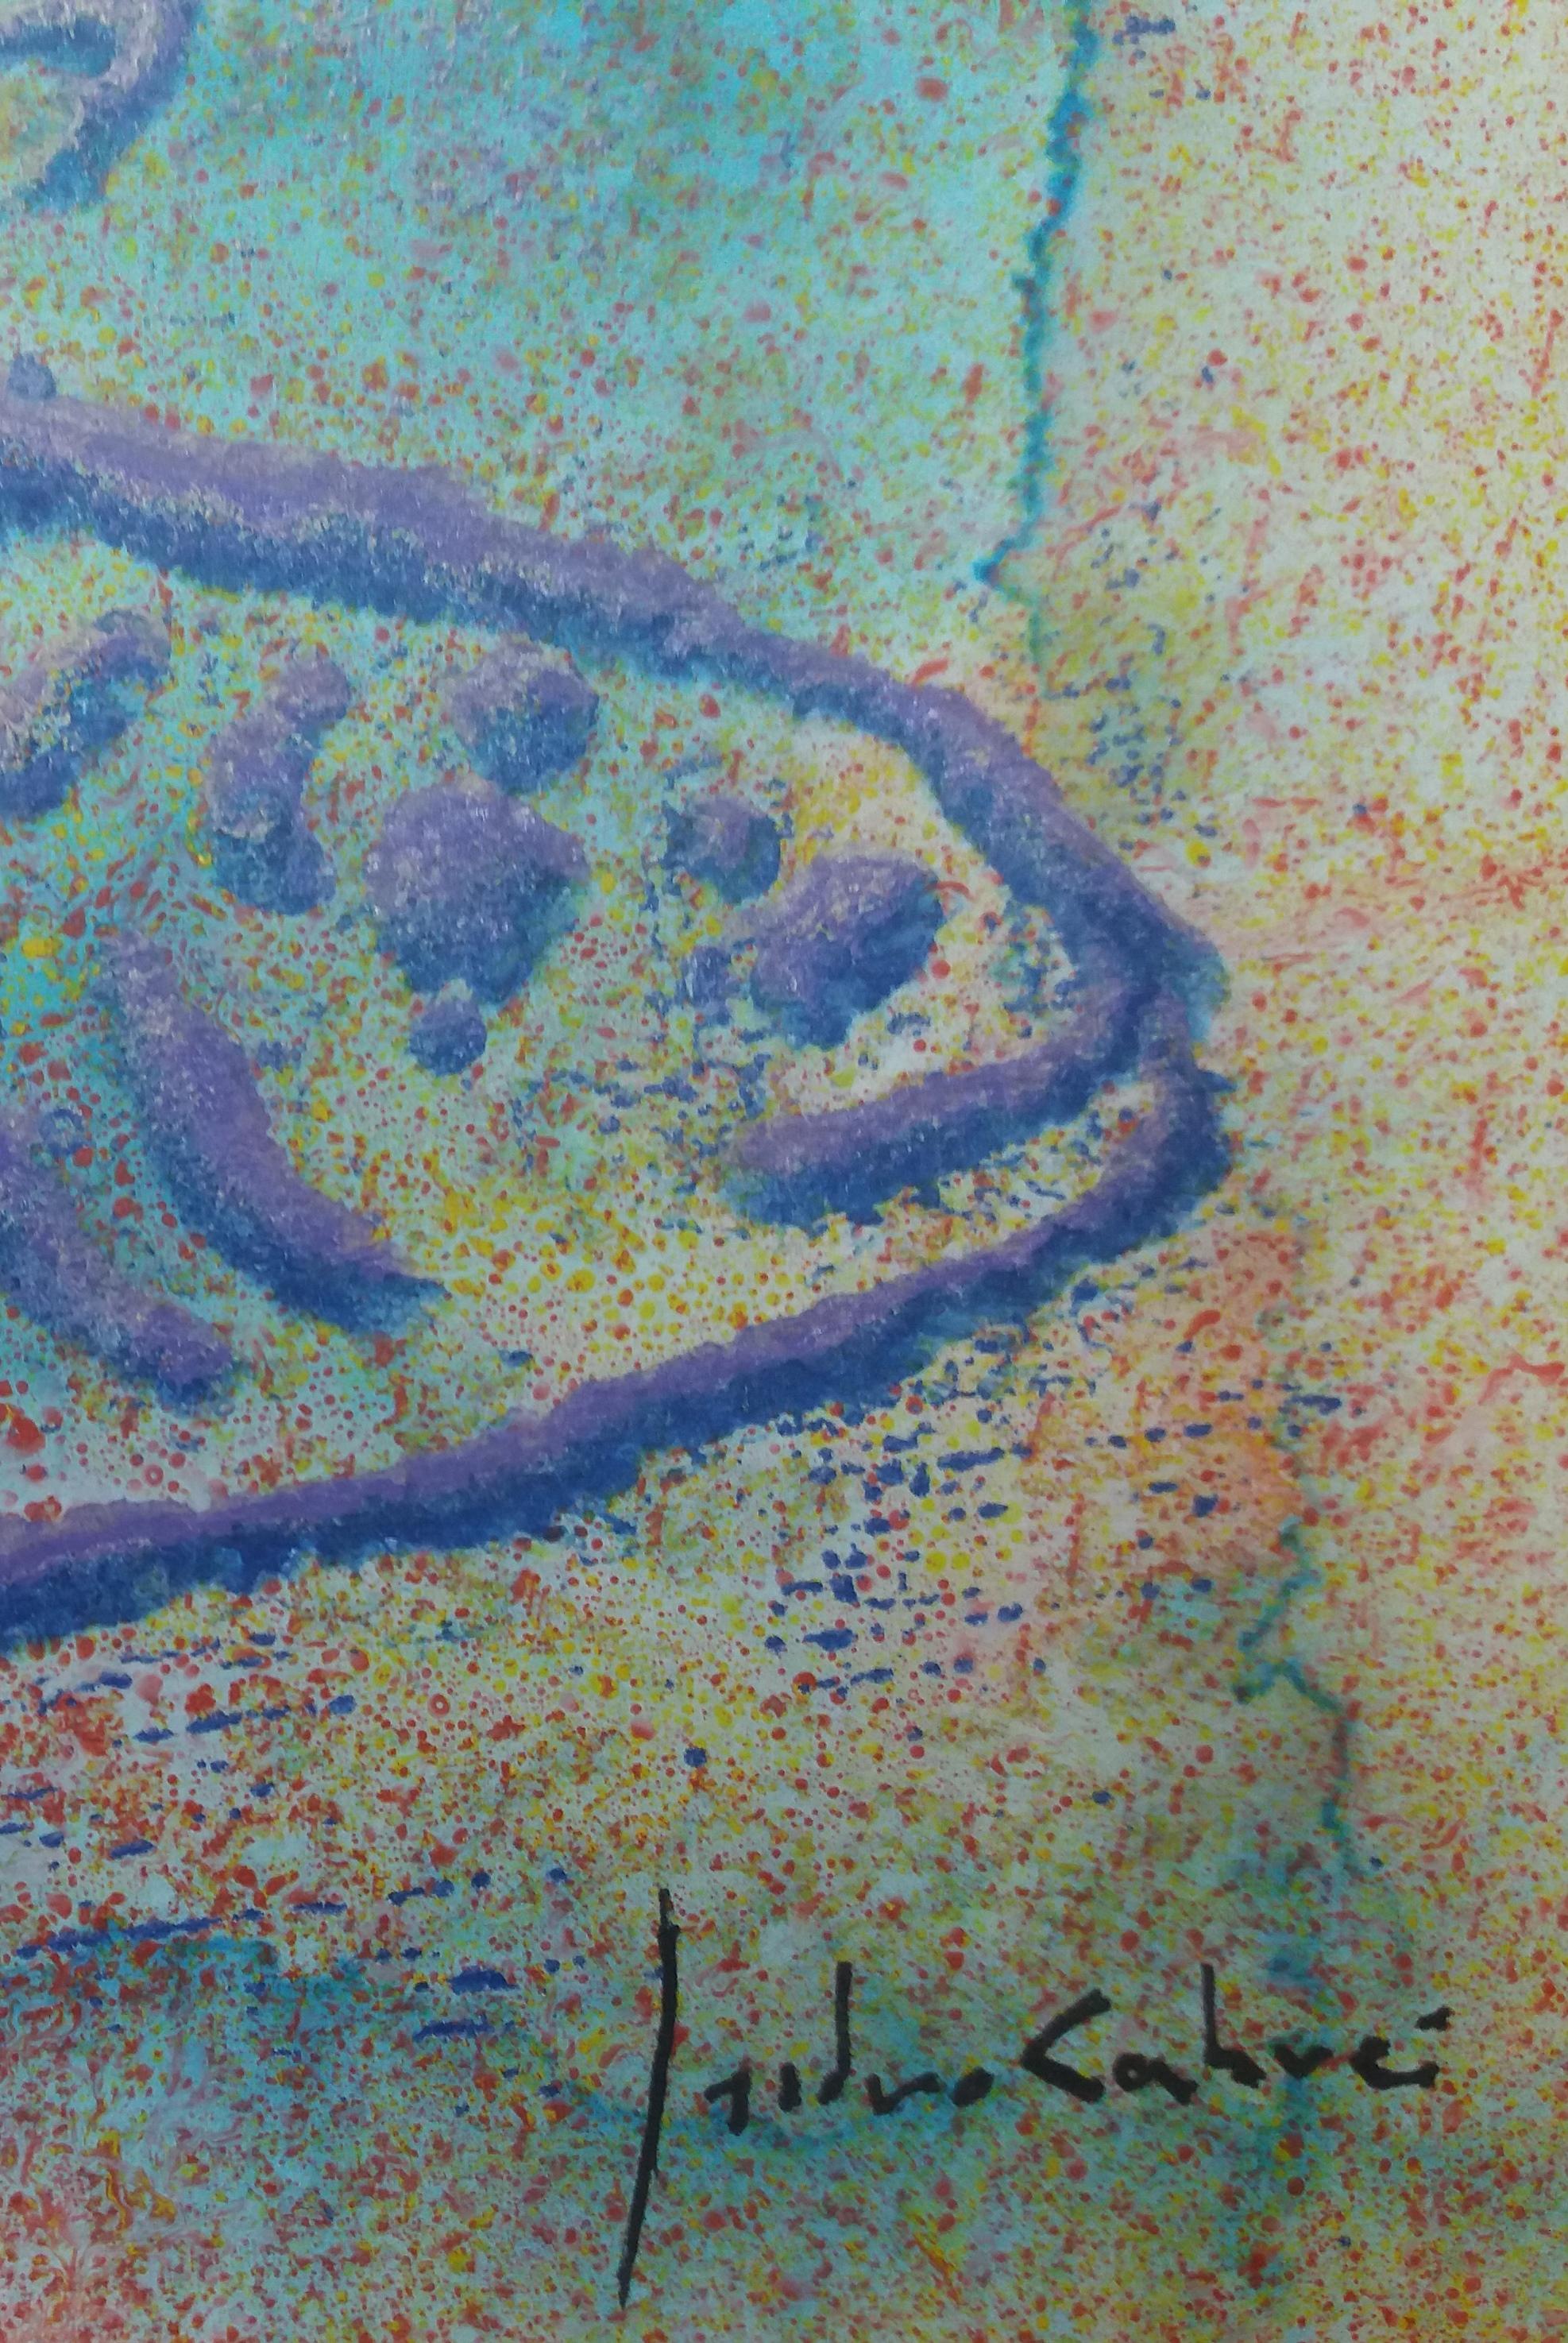  effet de gouttes. poisson peinture acrylique abstraite originale sur papier . encadré virtuel
Artistics de l'artiste espagnol ISIDRO CAHUE.

La personnalité de l'artiste se reflète dans différents domaines de l'art. Son souci du sujet, son